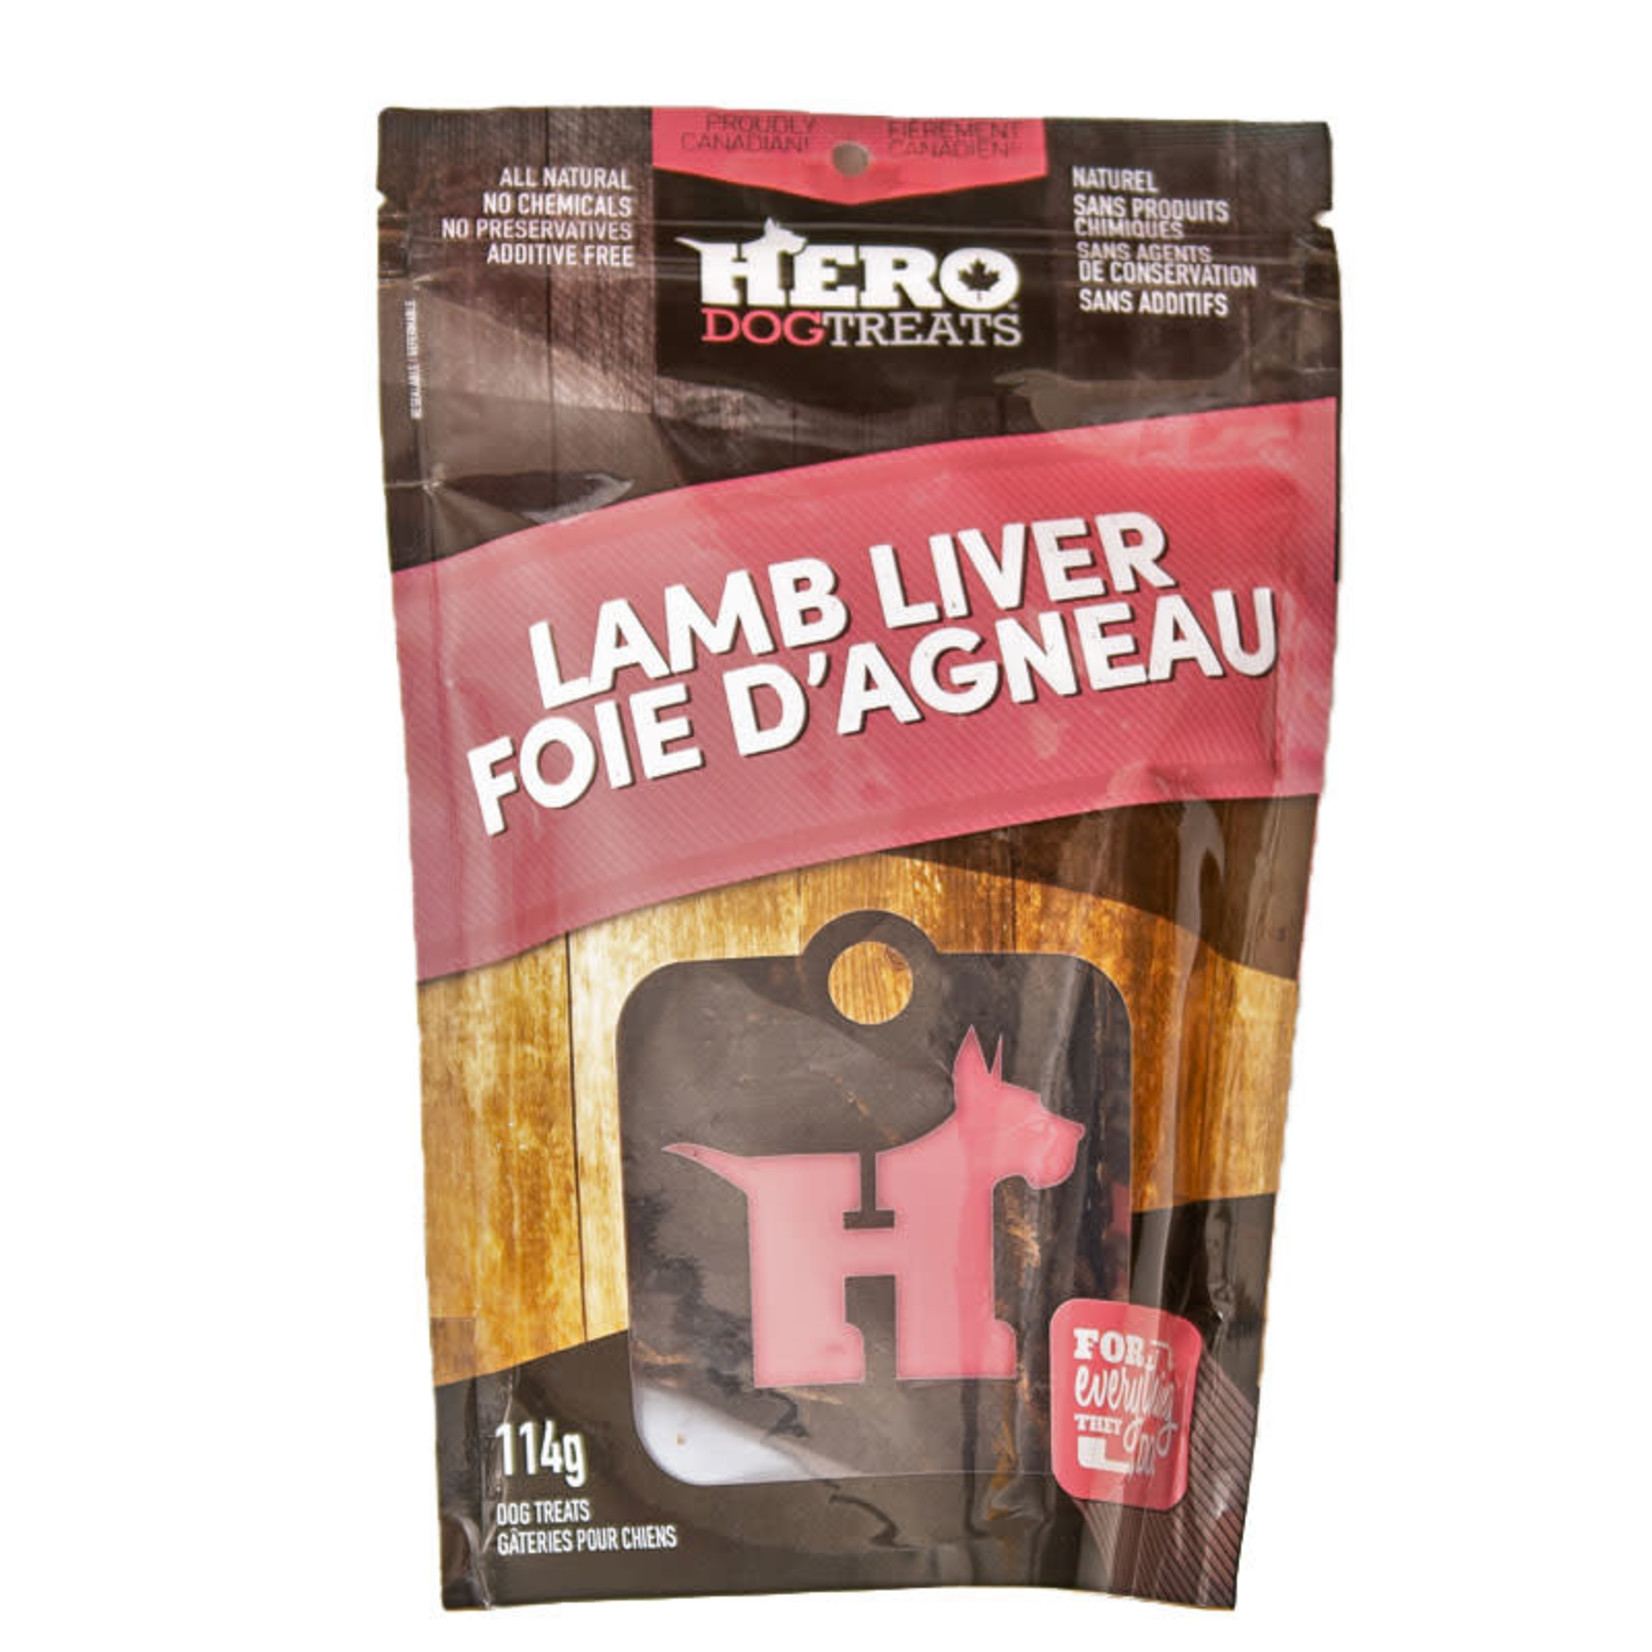 HERO Lamb Liver Dog 114g